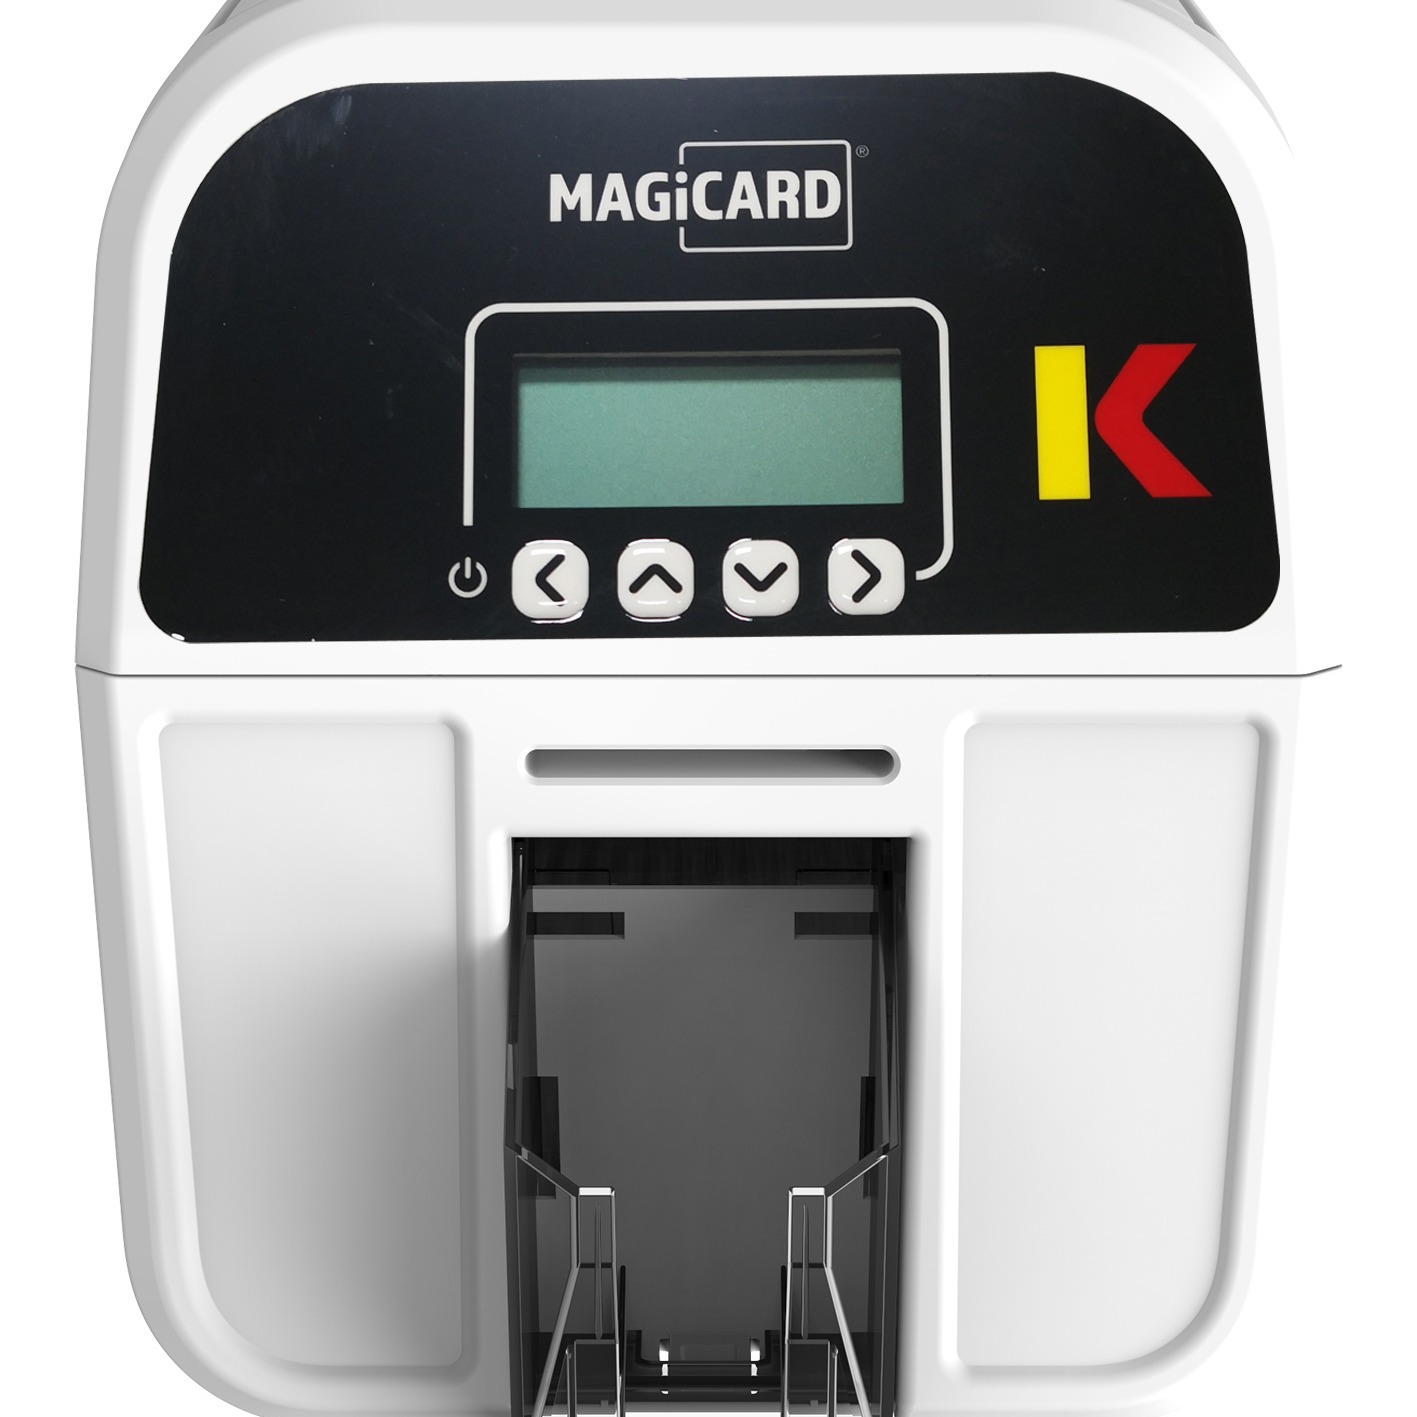 Magicard K健康证打印机 600dpi证卡打印机 可定制防伪水印安全功能 高晰工作卡制卡机 儿童免疫接种卡打印机图片